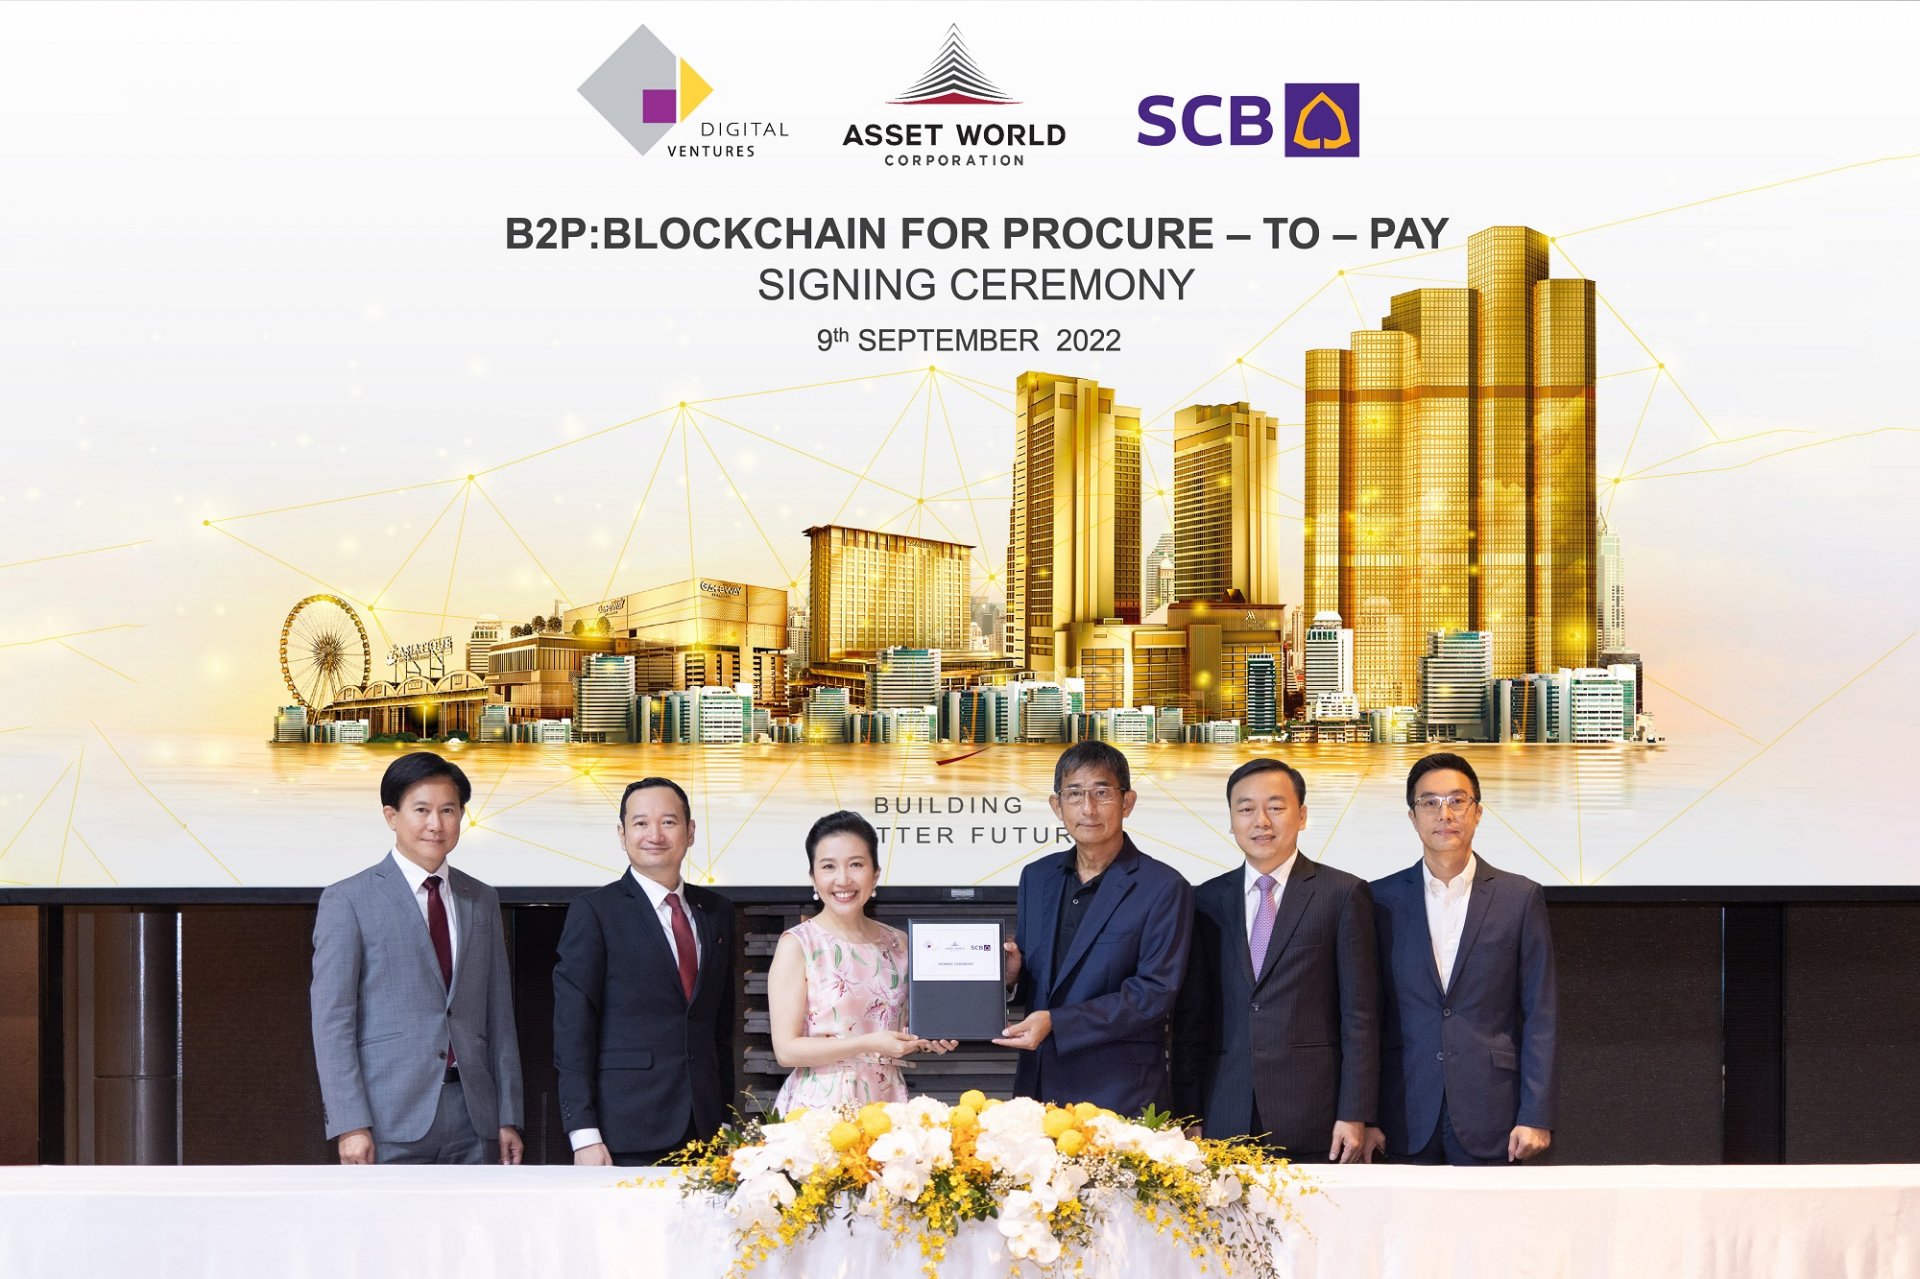 AWC ผนึก SCB นำ B2P แพลตฟอร์มจัดซื้อจัดจ้างบนเทคโนโลยีบล็อกเชน เชื่อมต่อซัพพลายเชน  ร่วมยกระดับอุตสาหกรรมอสังหาริมทรัพย์ไทย